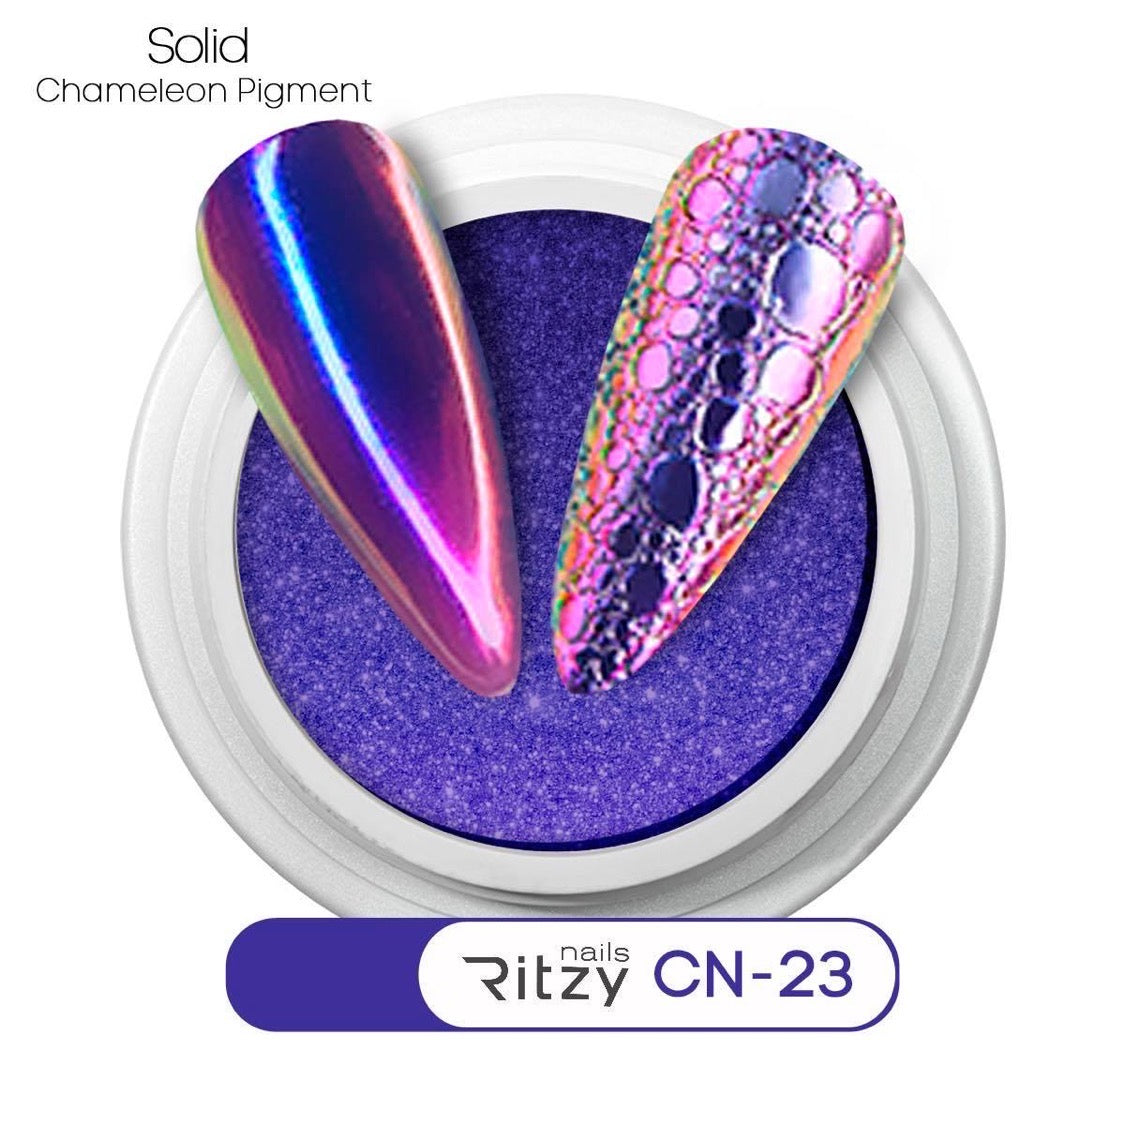 Chameleon pigment CN-23